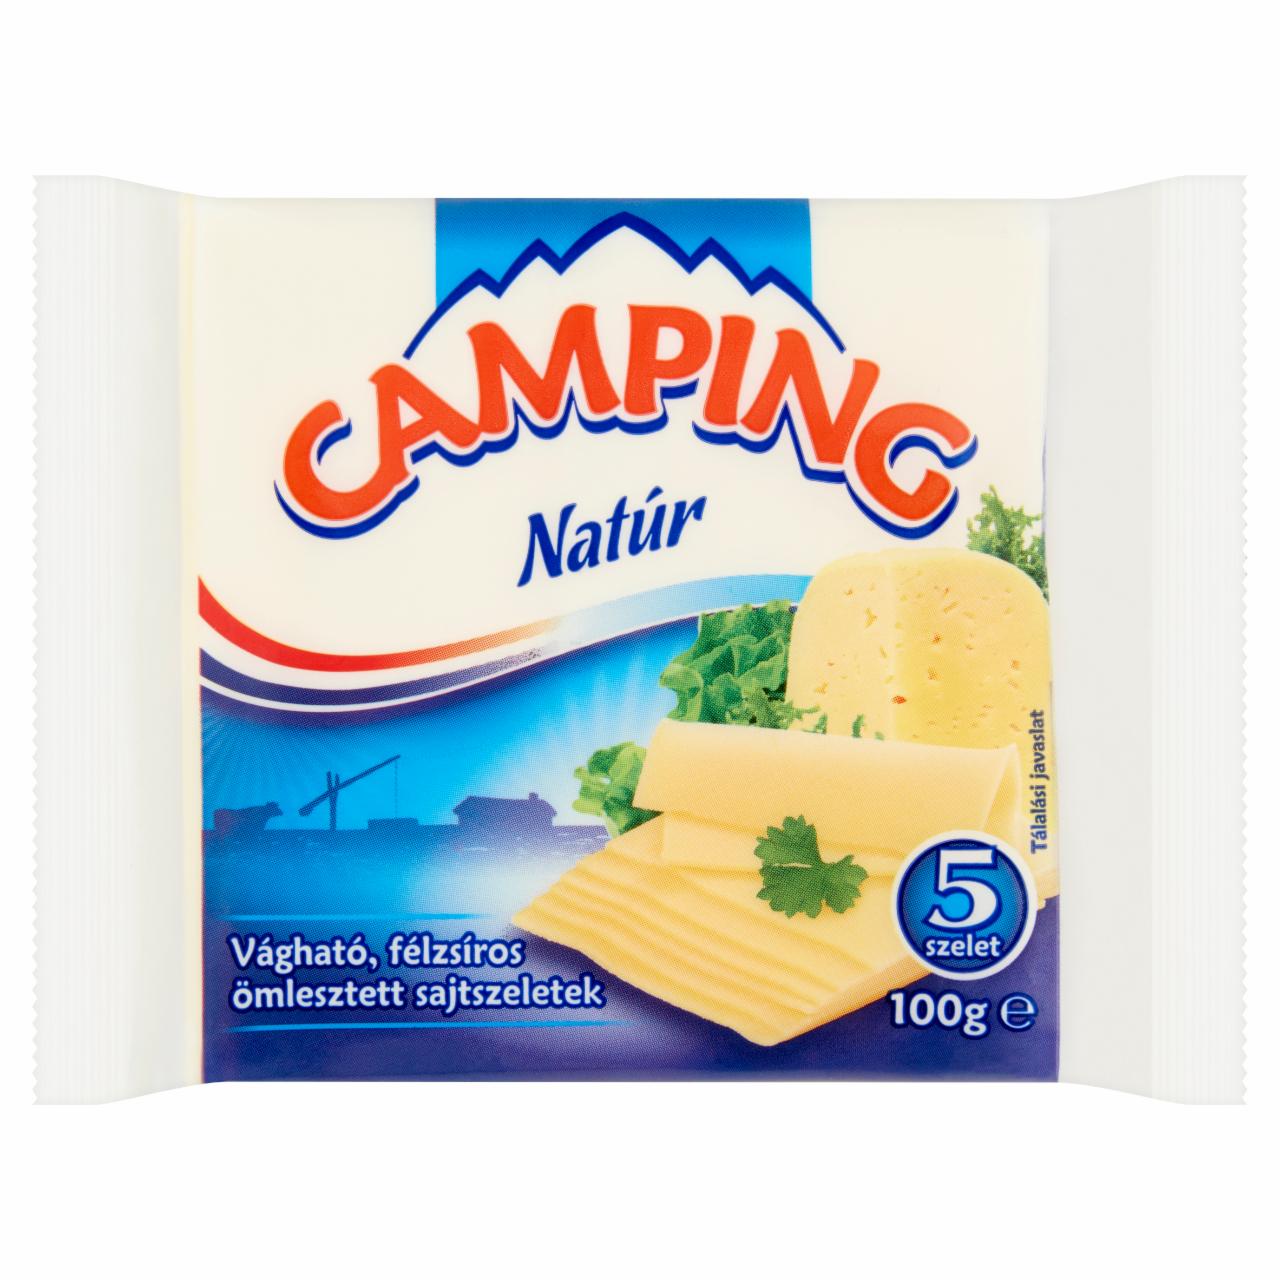 Képek - Camping natúr vágható, félzsíros ömlesztett sajtszeletek 5 db 100 g